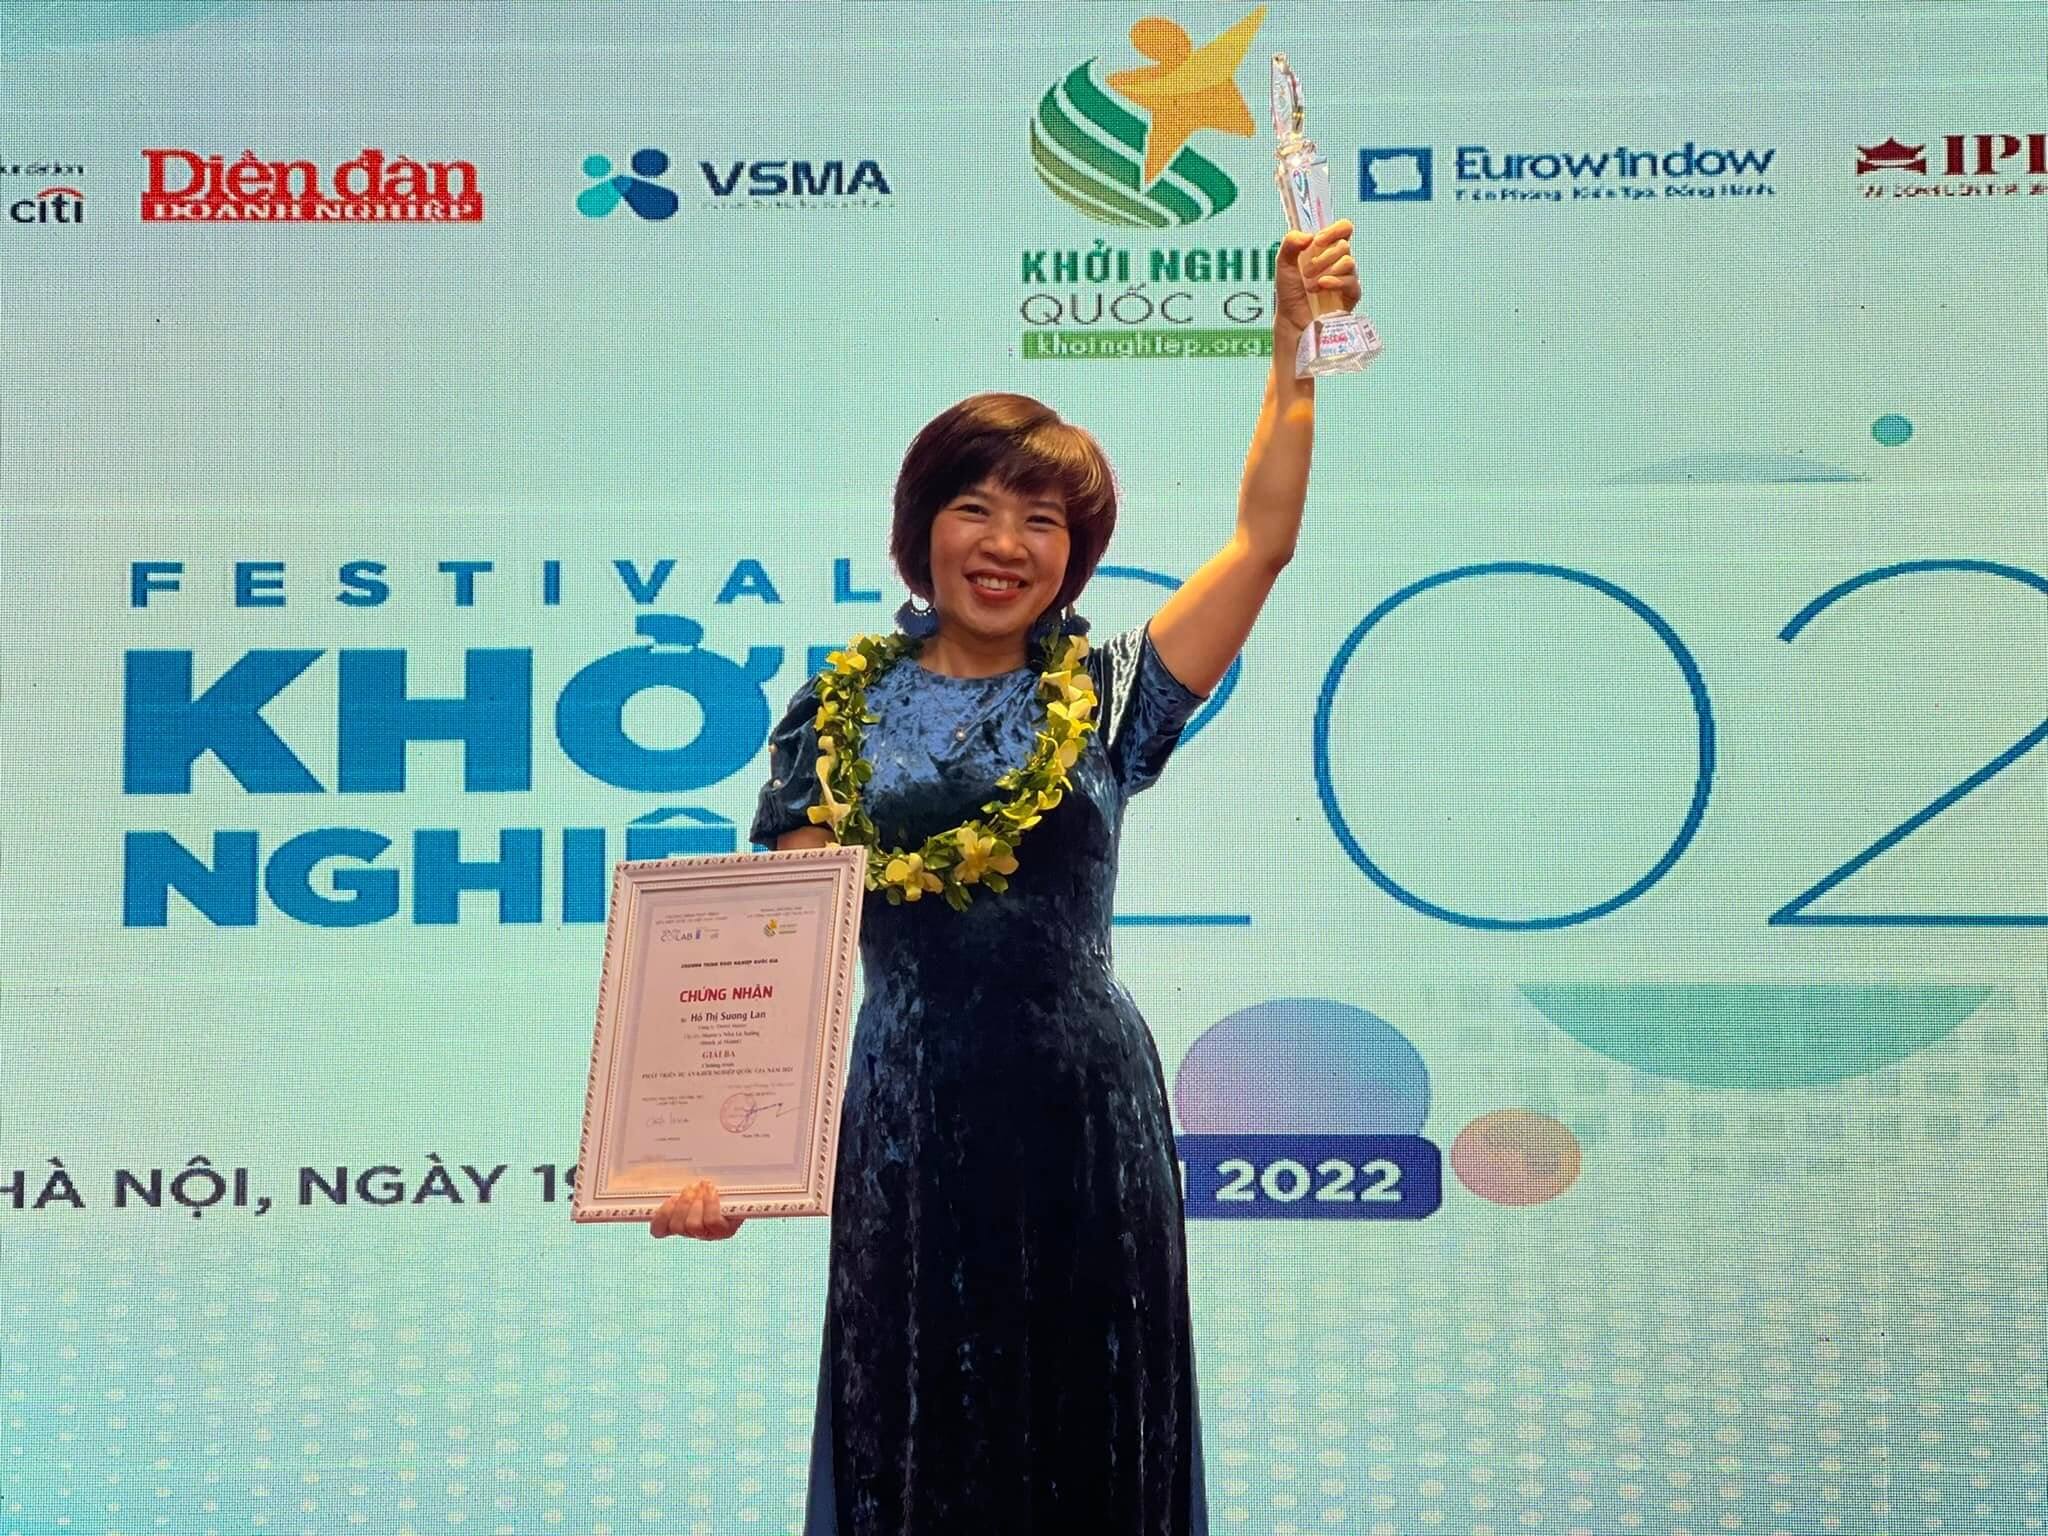 Maries vinh dự đạt được giải 3 cuộc thi, vừa ra Hà Nội  nhận giải hồi tháng 1/2022